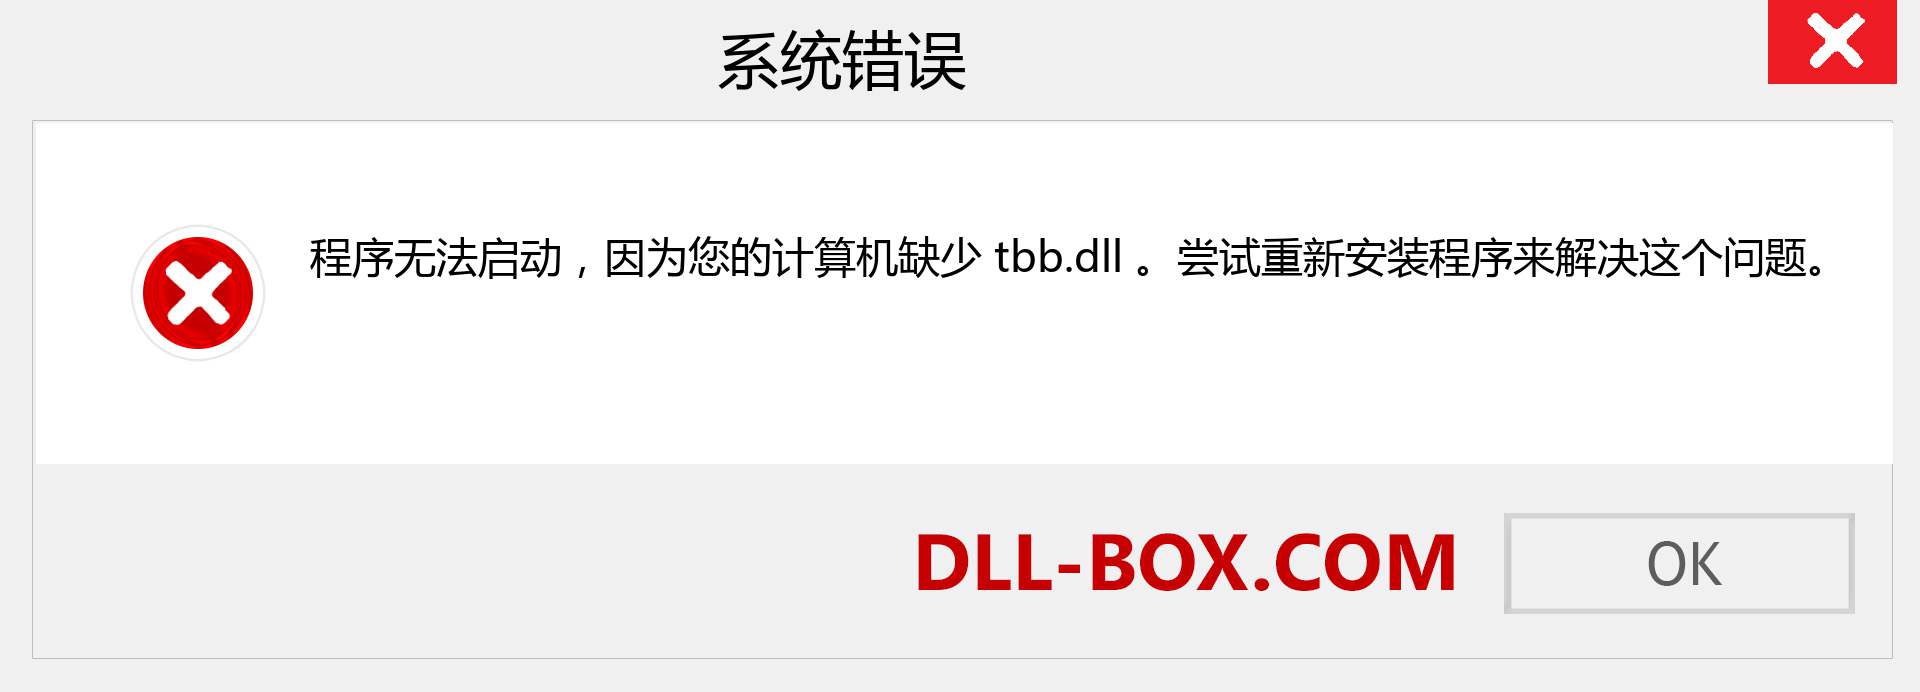 tbb.dll 文件丢失？。 适用于 Windows 7、8、10 的下载 - 修复 Windows、照片、图像上的 tbb dll 丢失错误